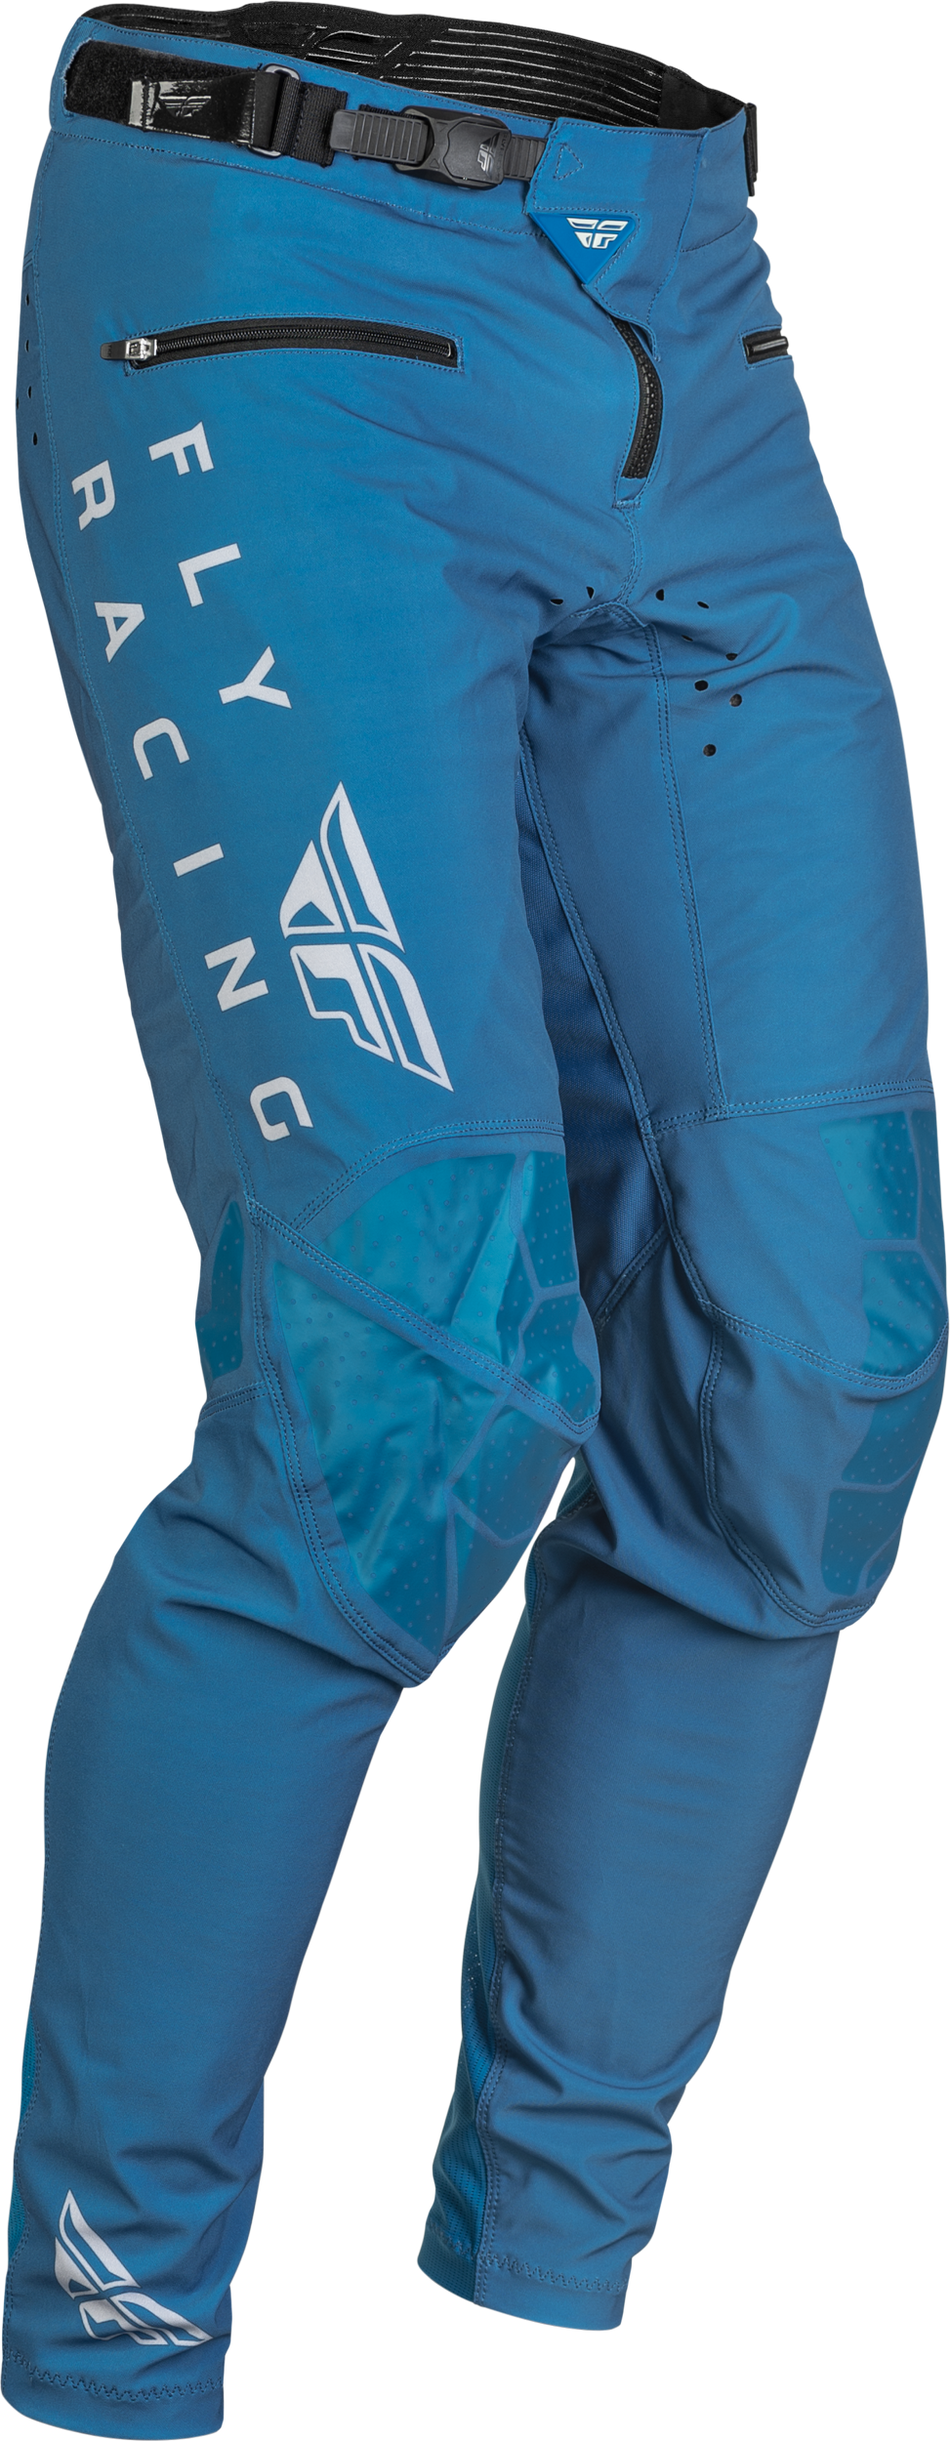 FLY RACING Radium Bicycle Pants Slate Blue/Grey Sz 32 376-04432